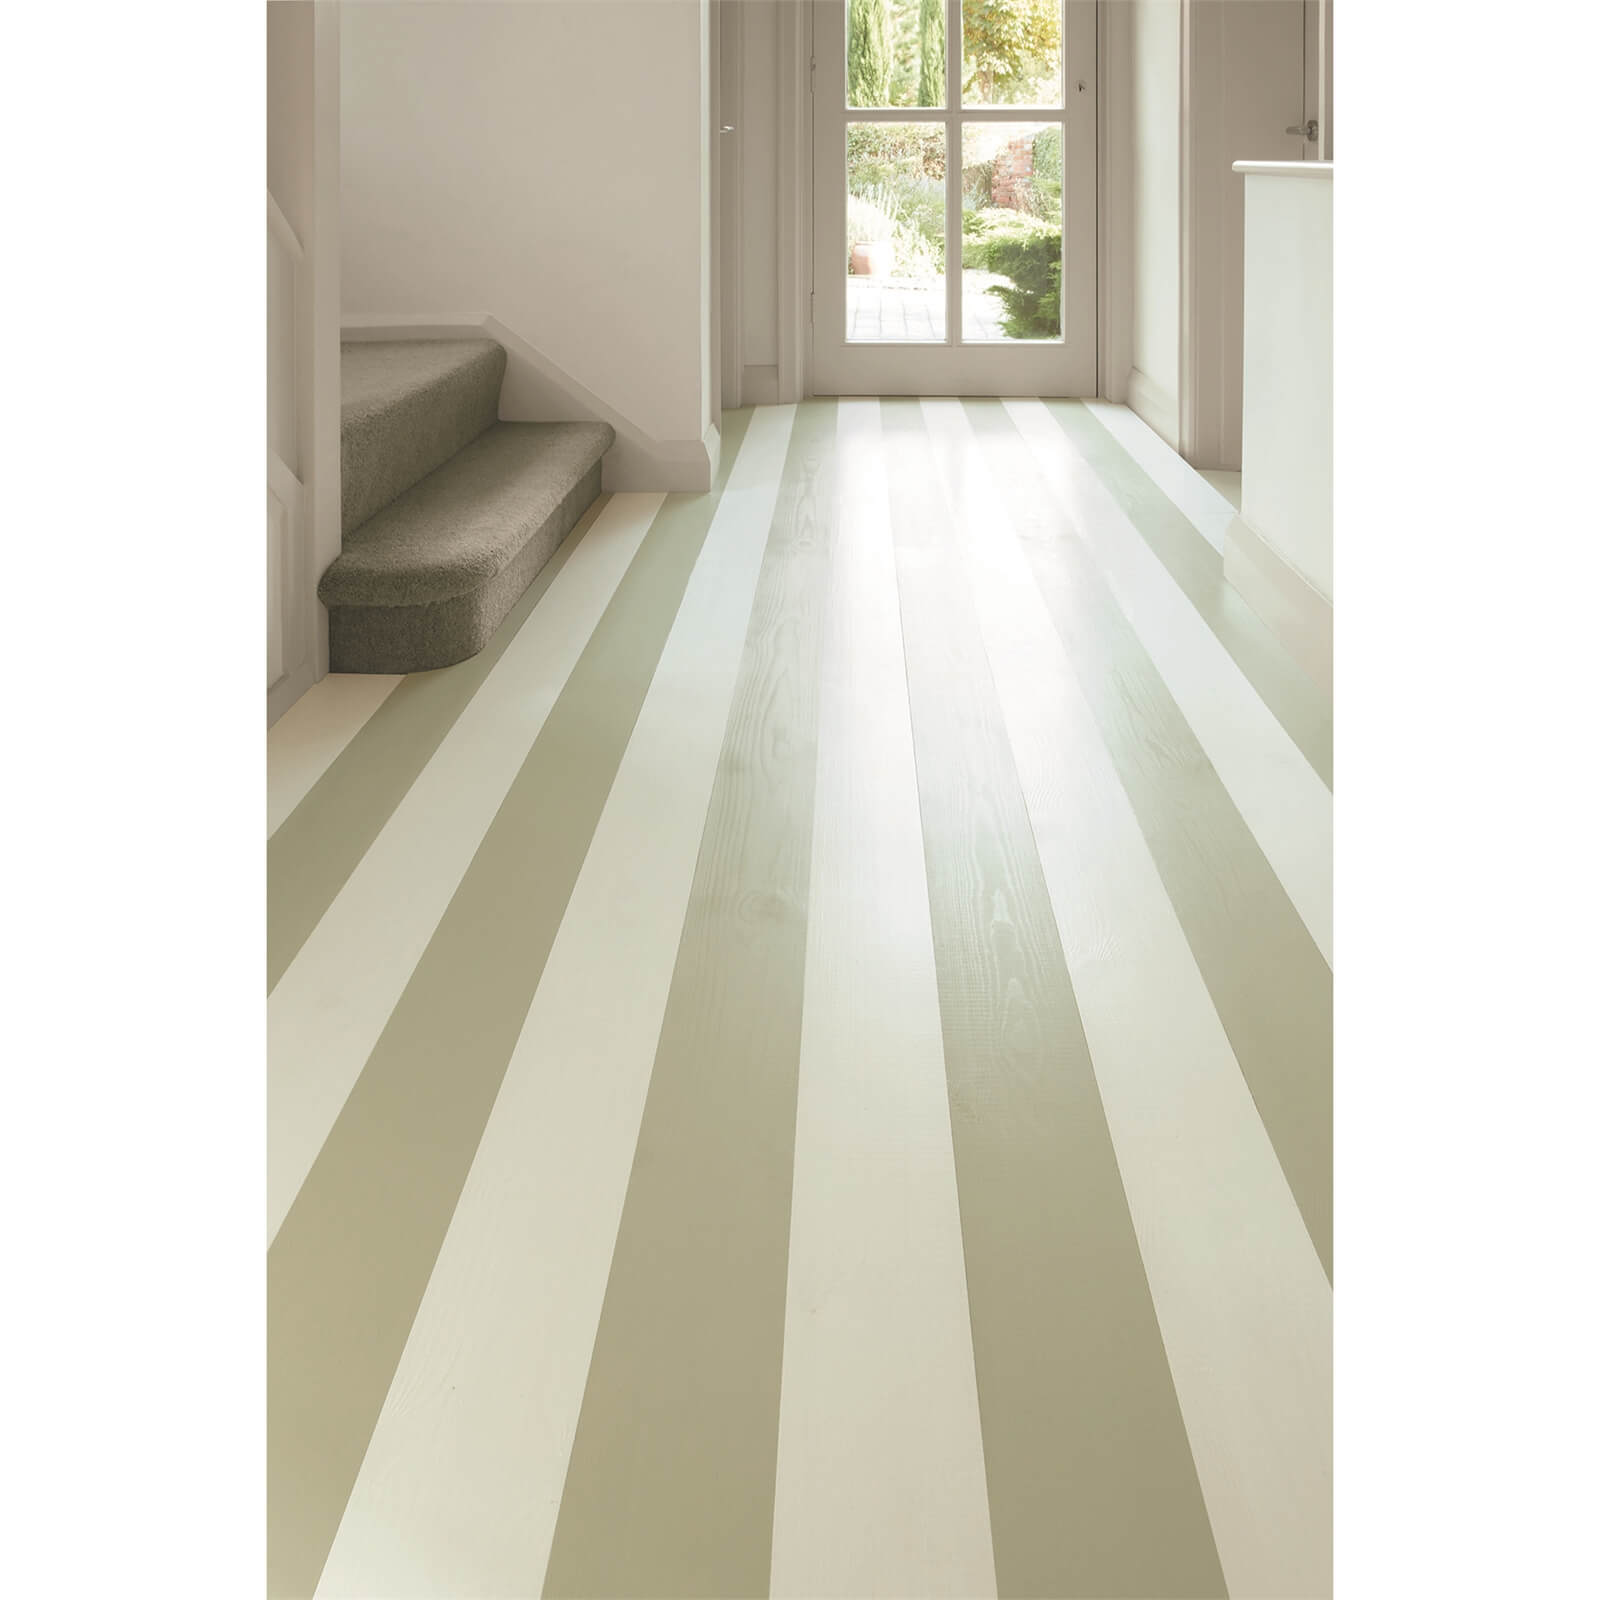 Ronseal Diamond Hard Floor Paint Olive Green - 750ml